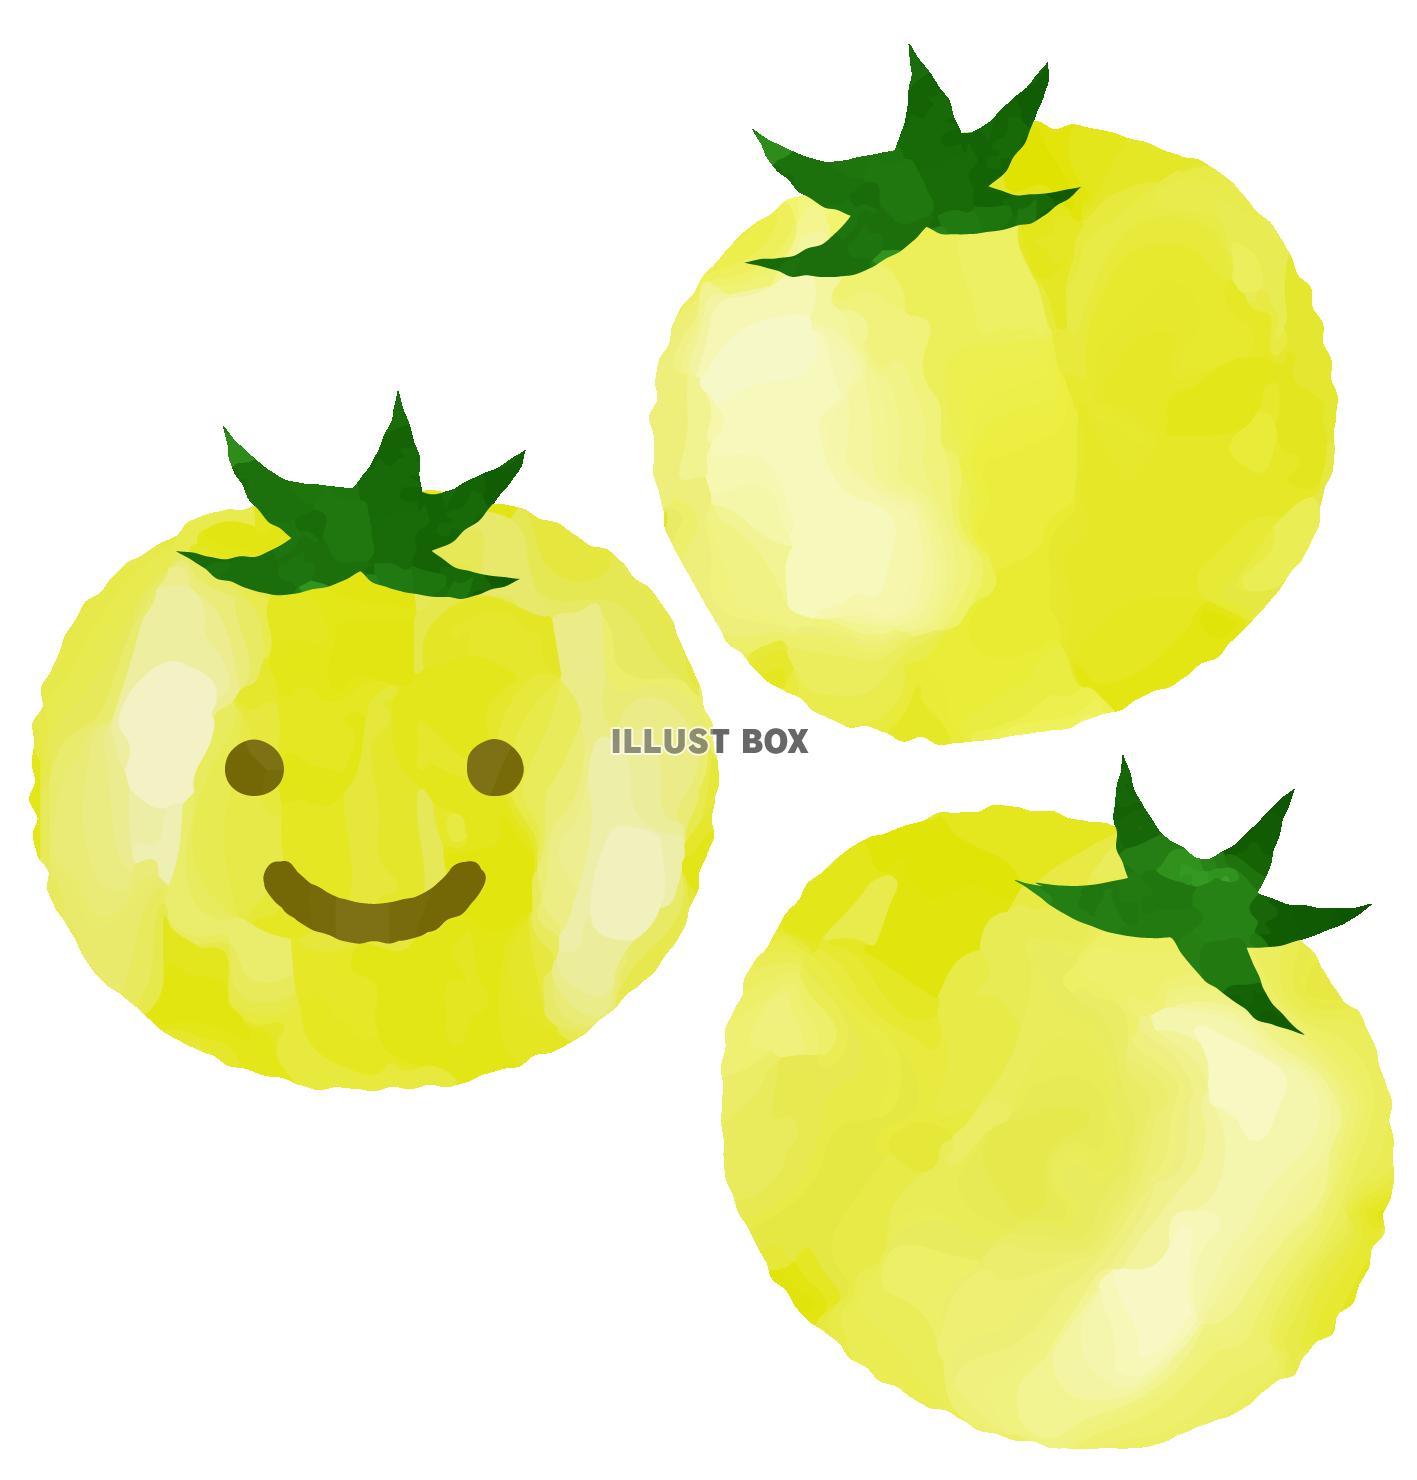 笑顔の黄色いトマト